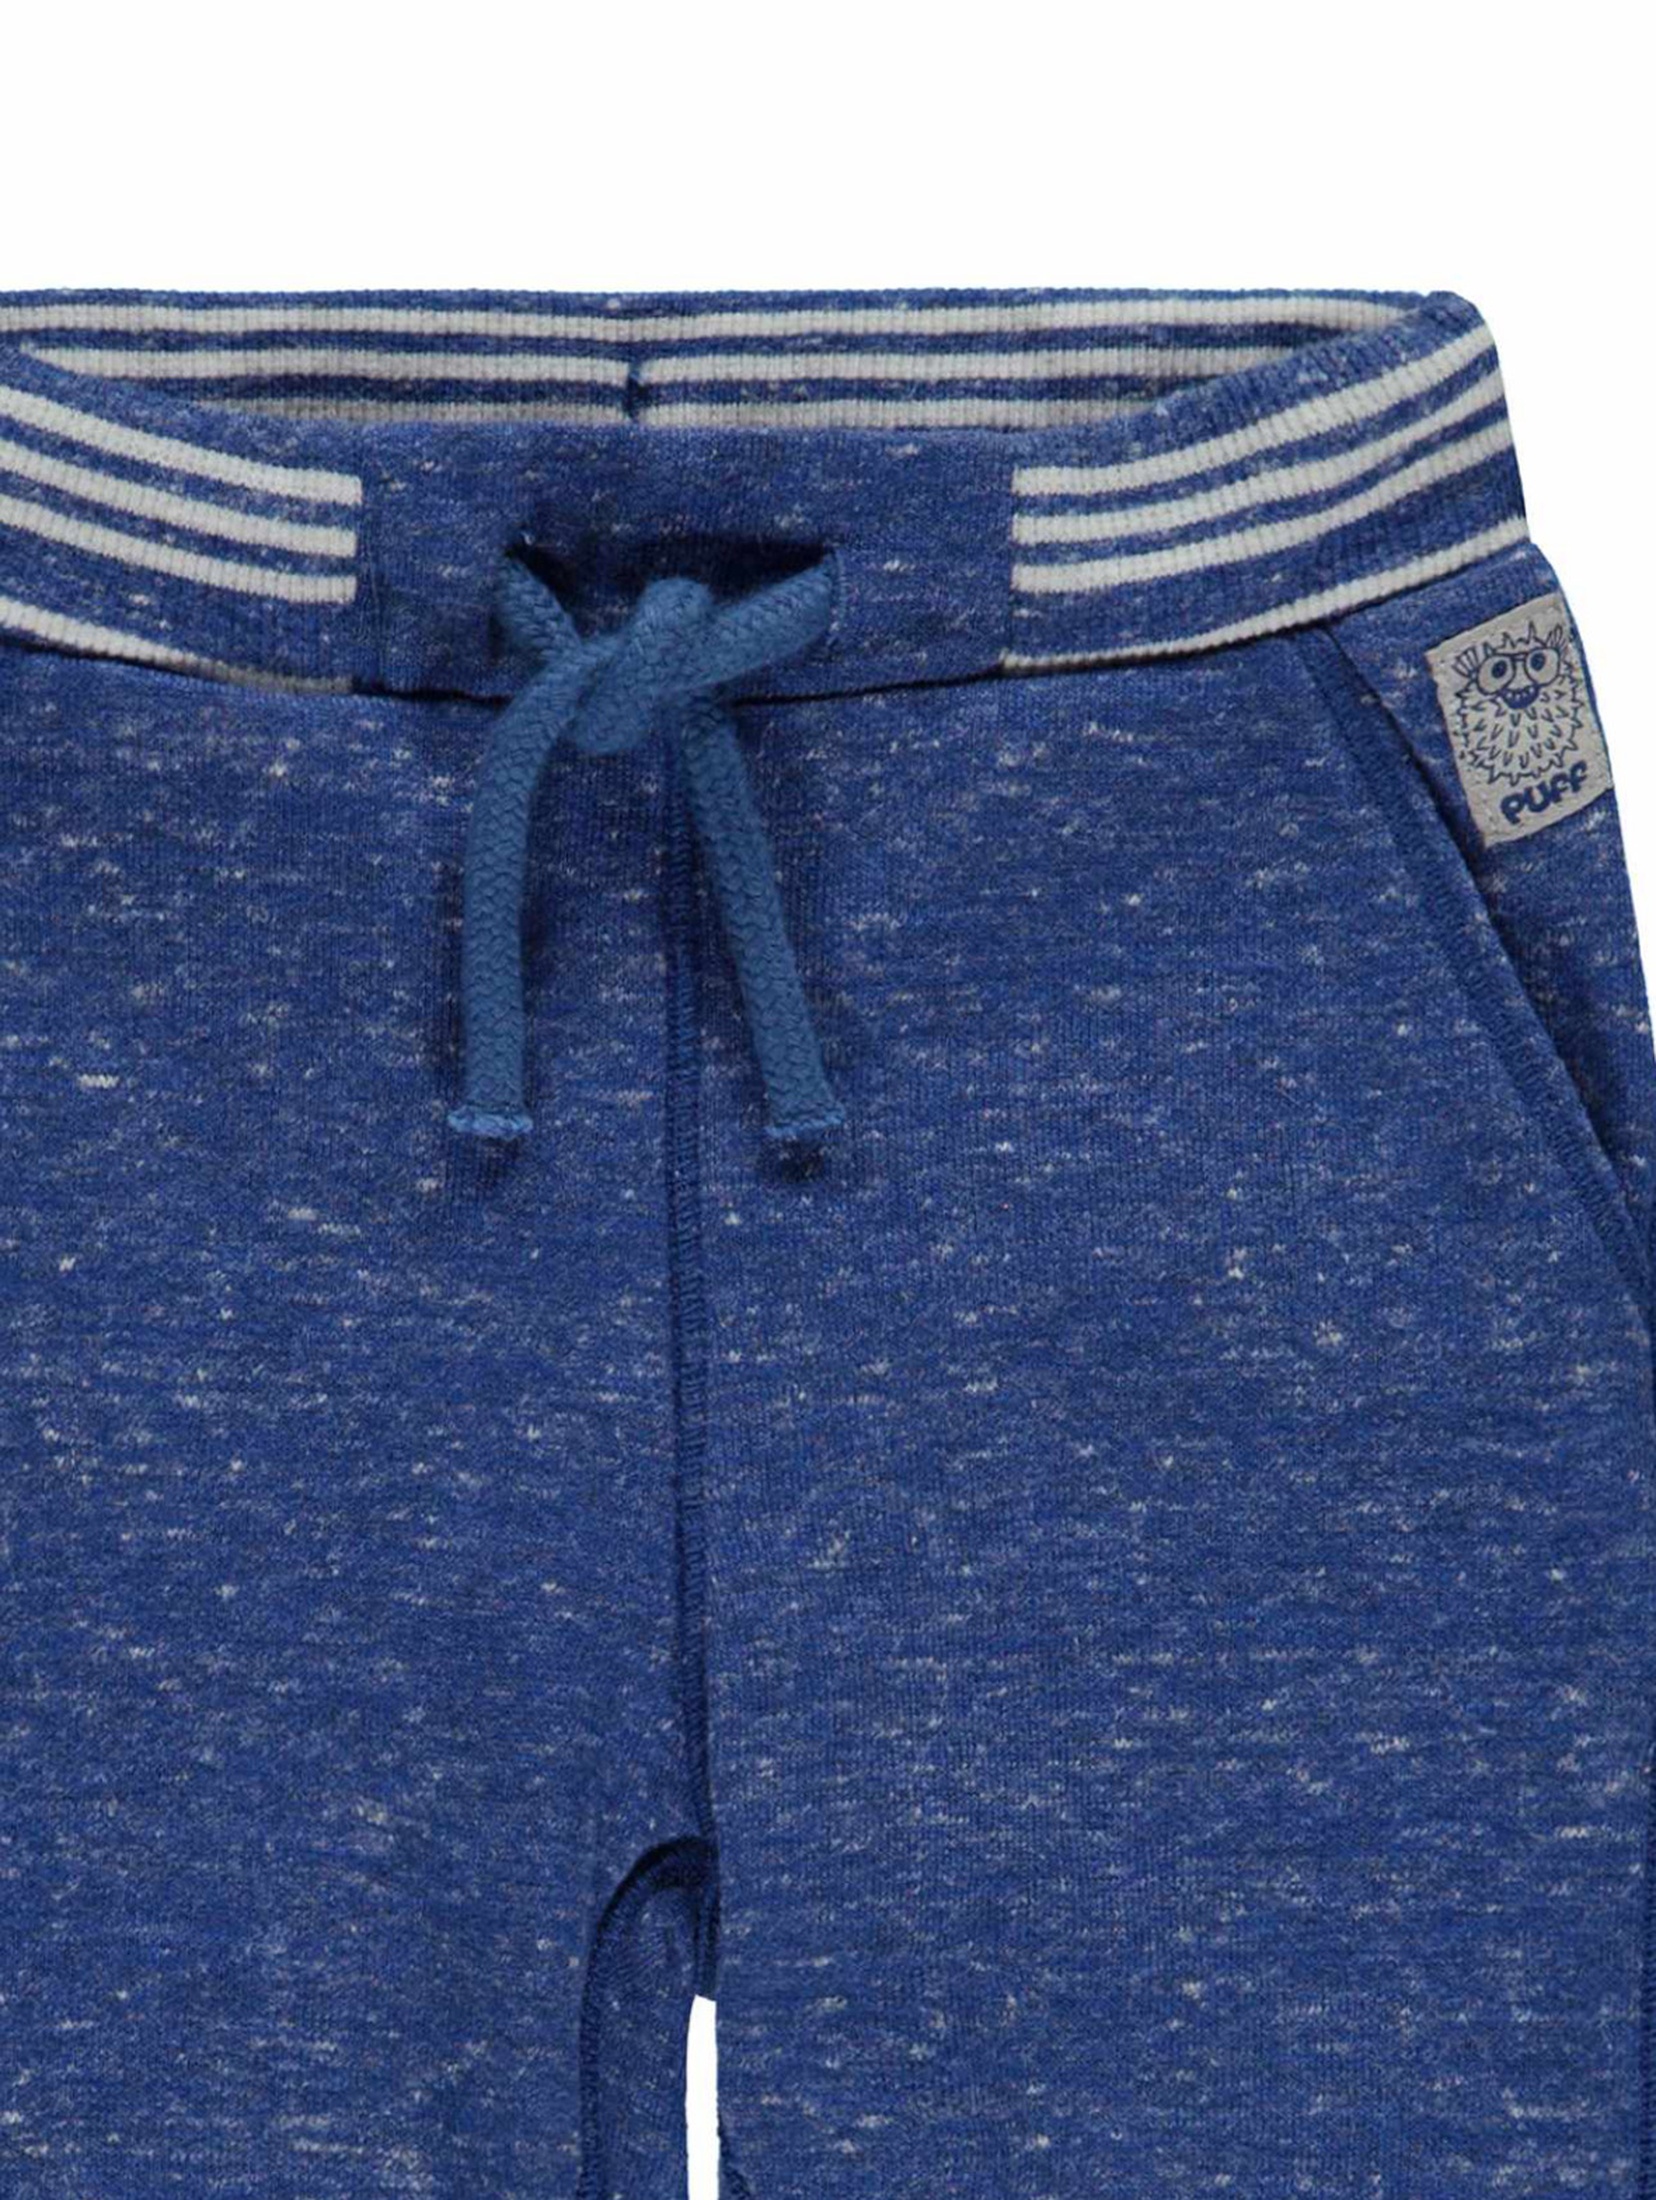 Spodnie dresowe chłopięce niebieskie